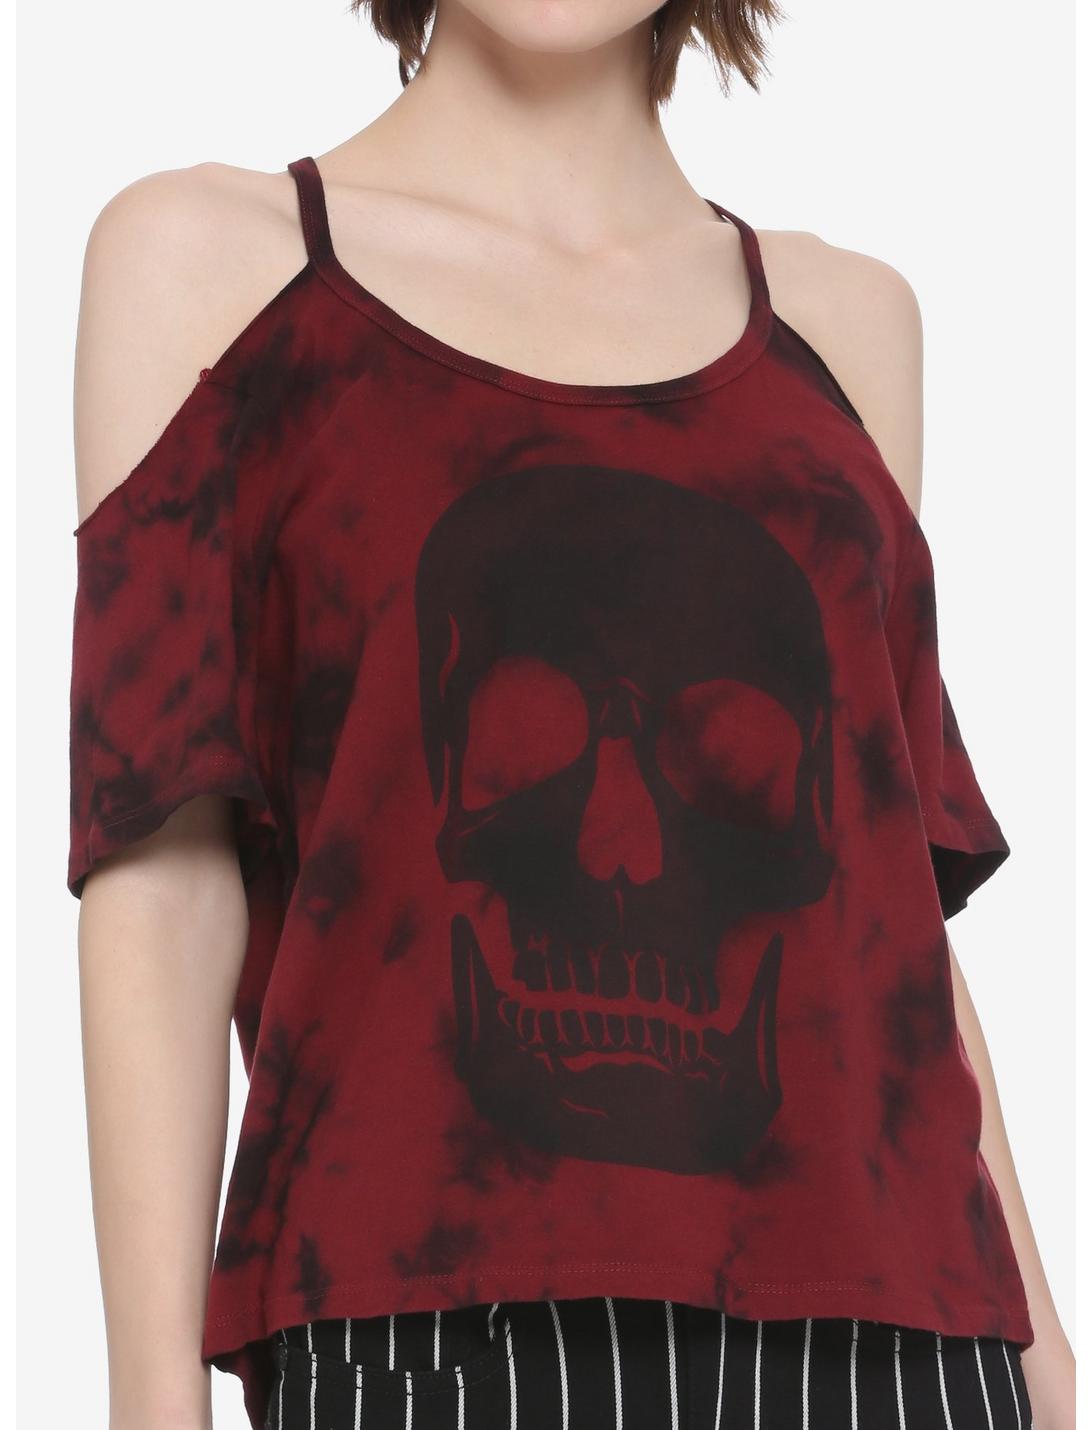 Skull Red & Black Tie-Dye Cold Shoulder Girls Top, MULTI, hi-res